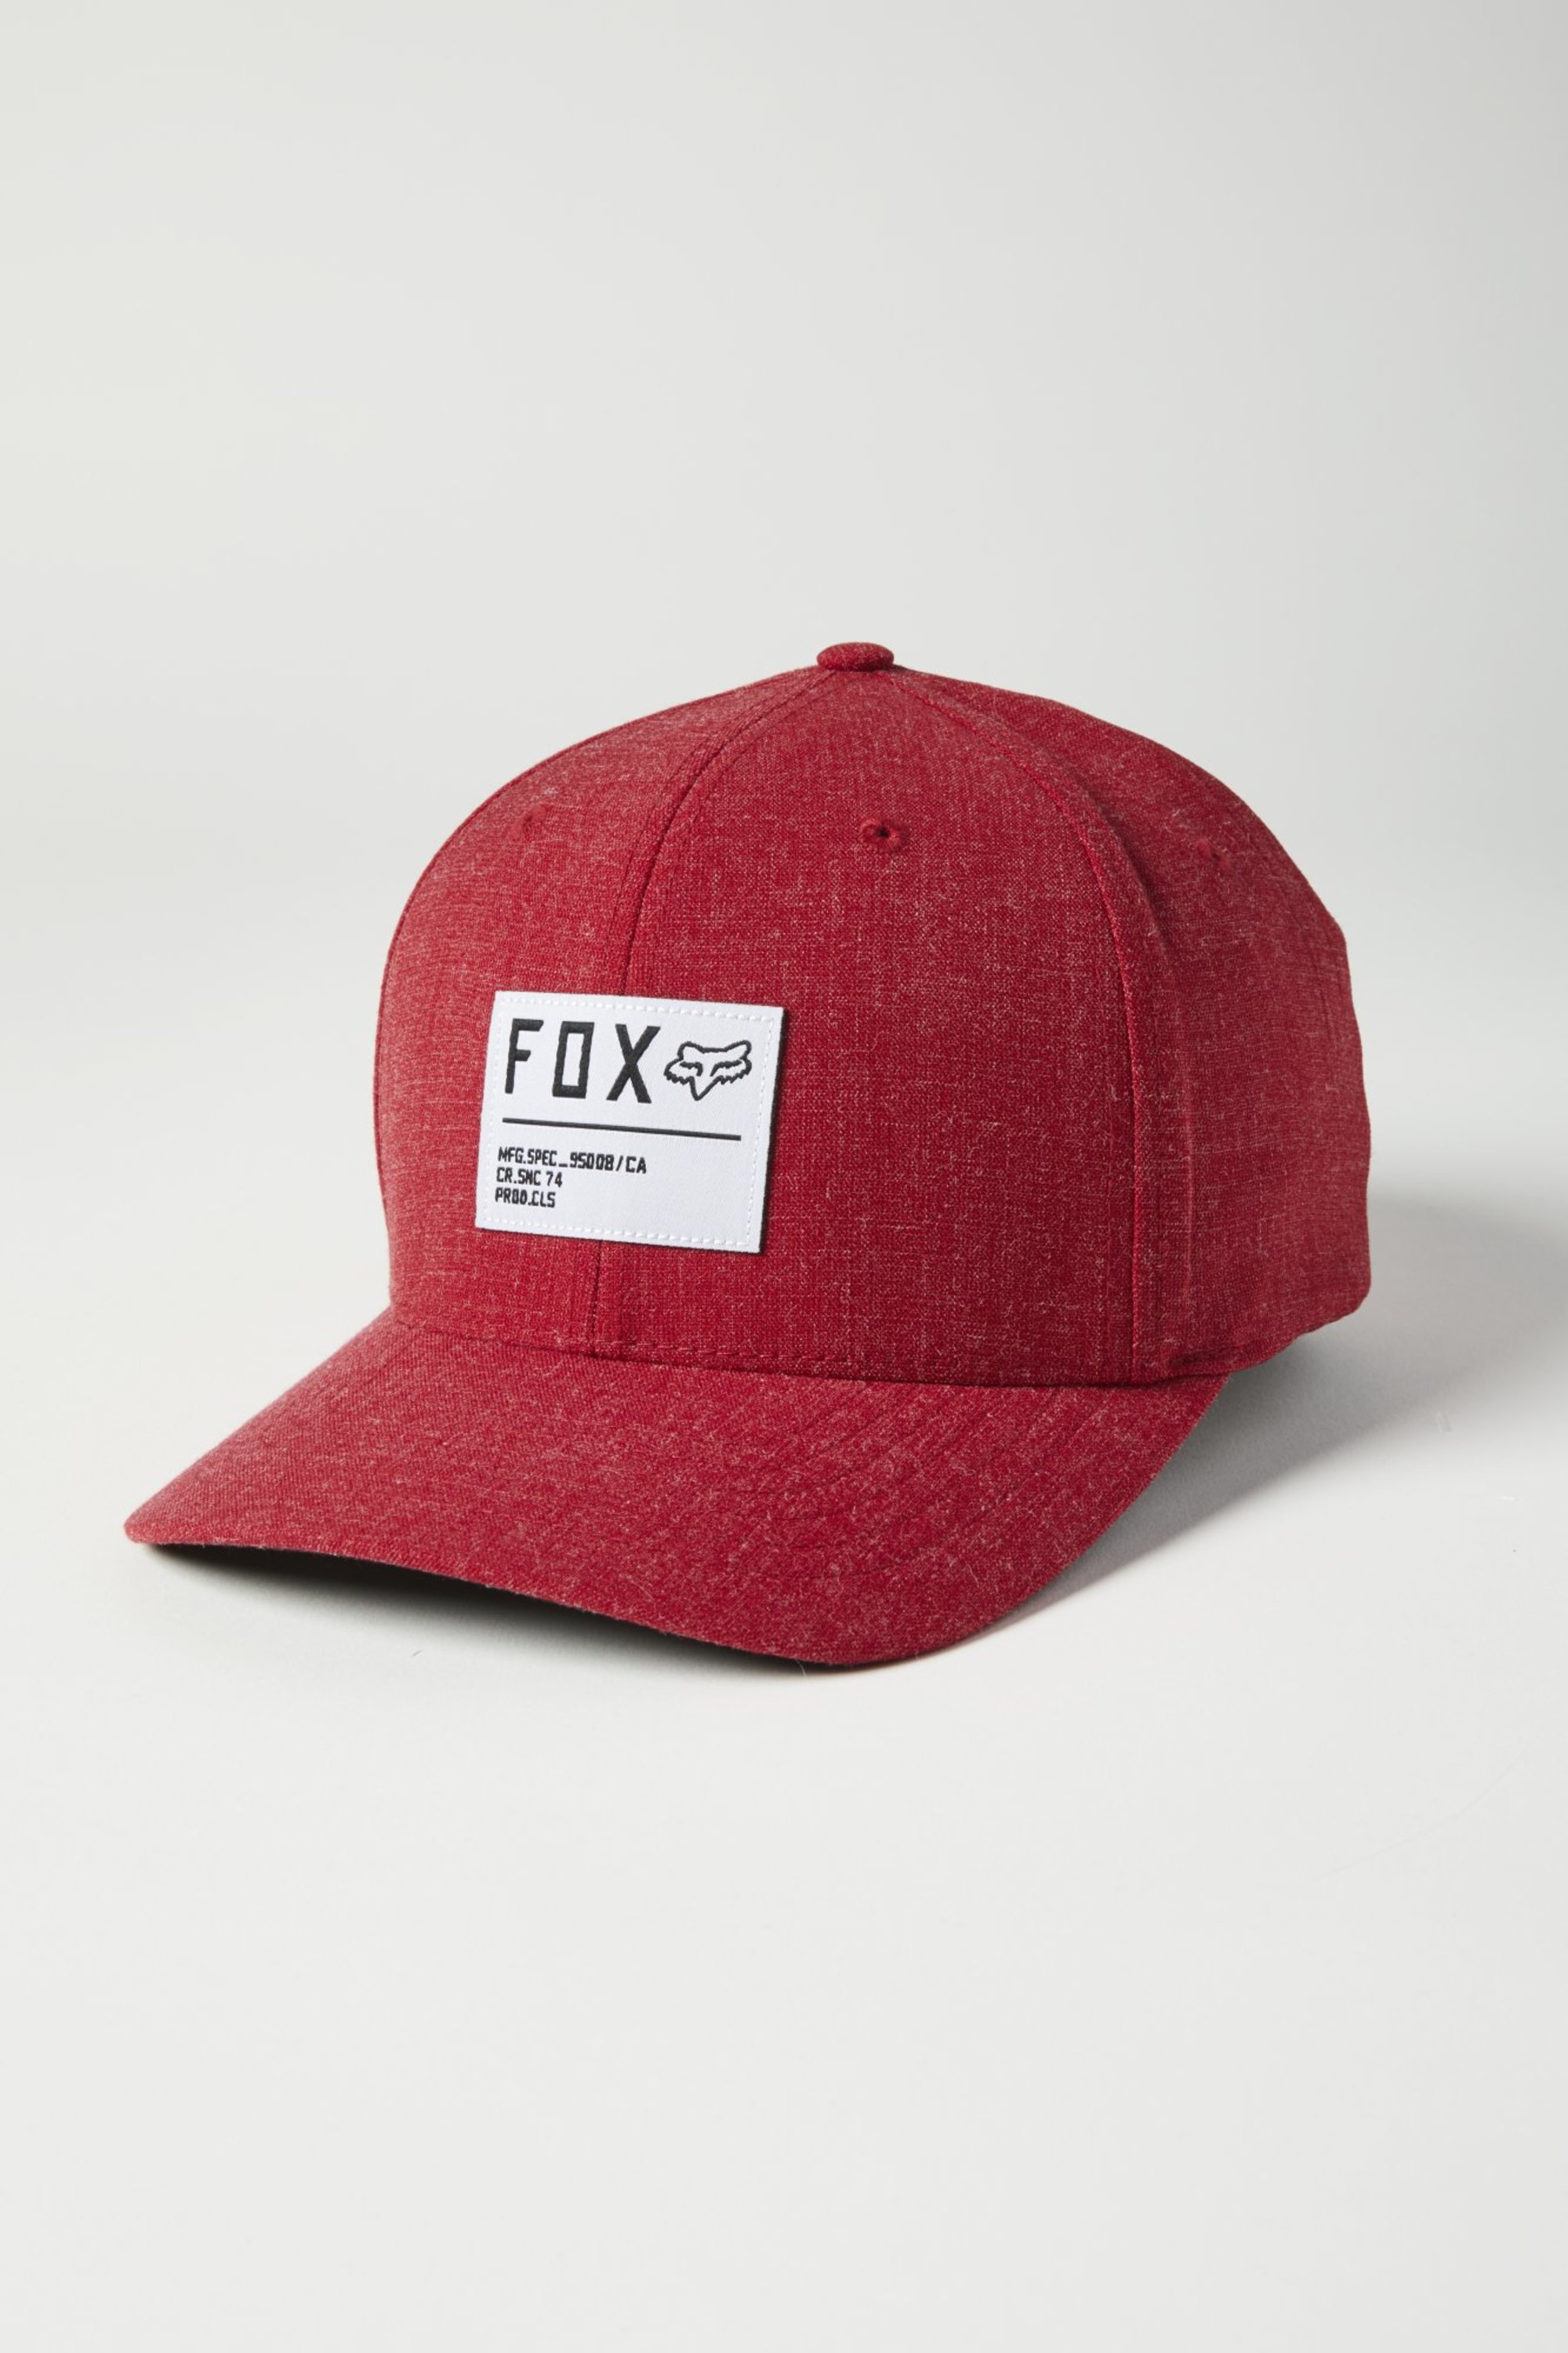 fox racing flexfit hats for men non stop